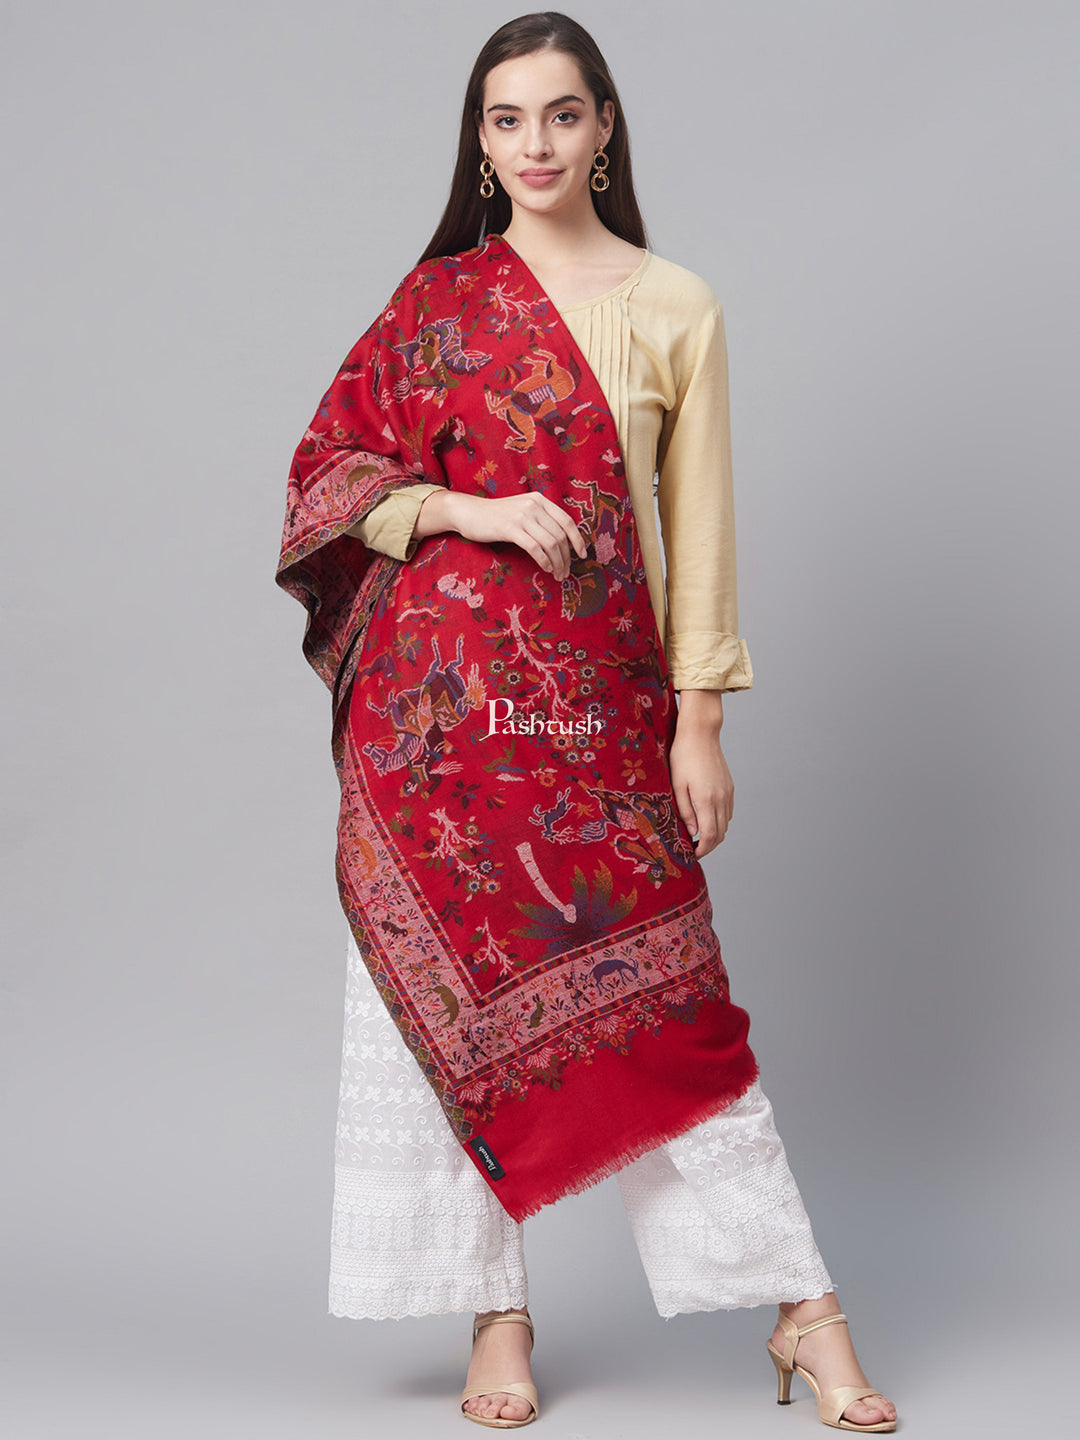 Pashtush India Womens Shawls Pashtush Womens Shikaardar Ethnic Weave Shawl, 100% Pure Wool, With Woolmark Certificate